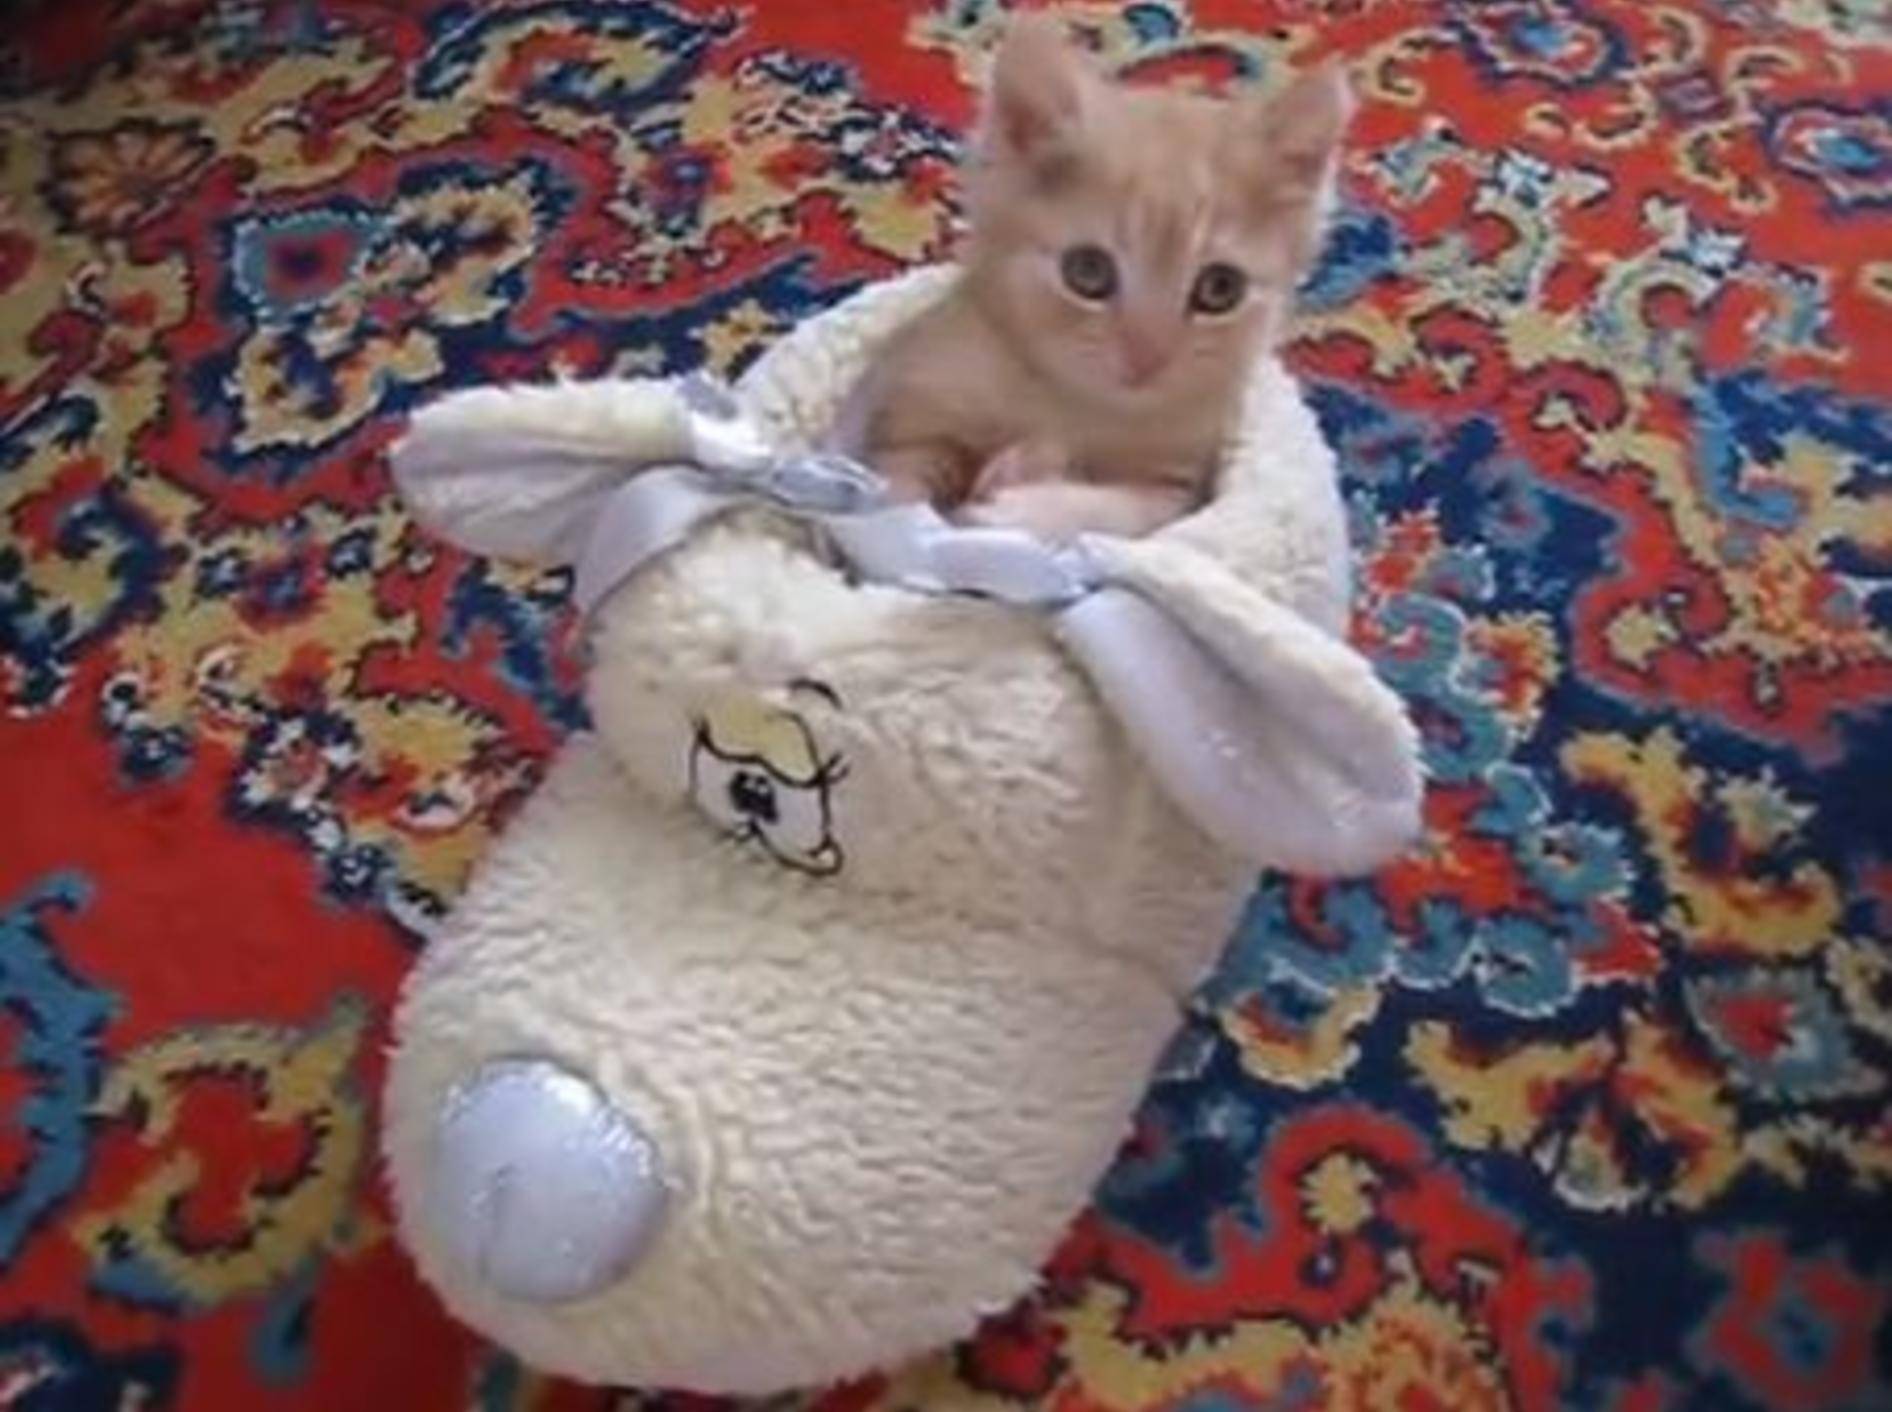 Süßes Katzenbaby: "Am liebsten schlafe ich im Schuh!" – Bild: Youtube / nytroz23